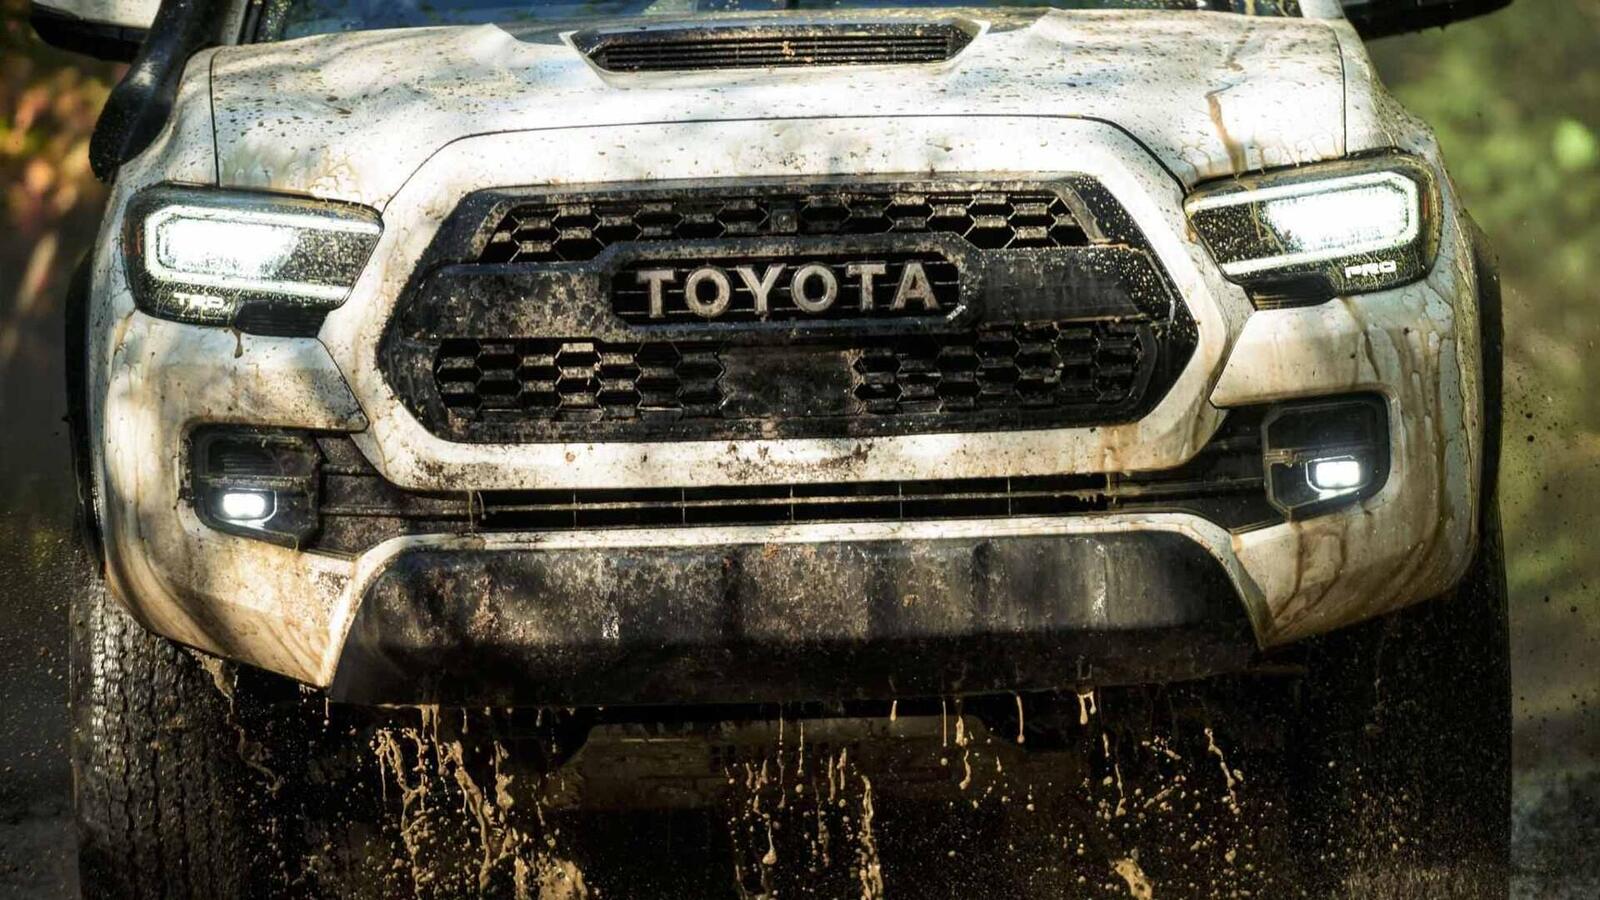 Xem trước bán tải Toyota Tacoma 2020 mới trước ngày ra mắt đối thủ đáng gờm Ford Ranger - Ảnh 6